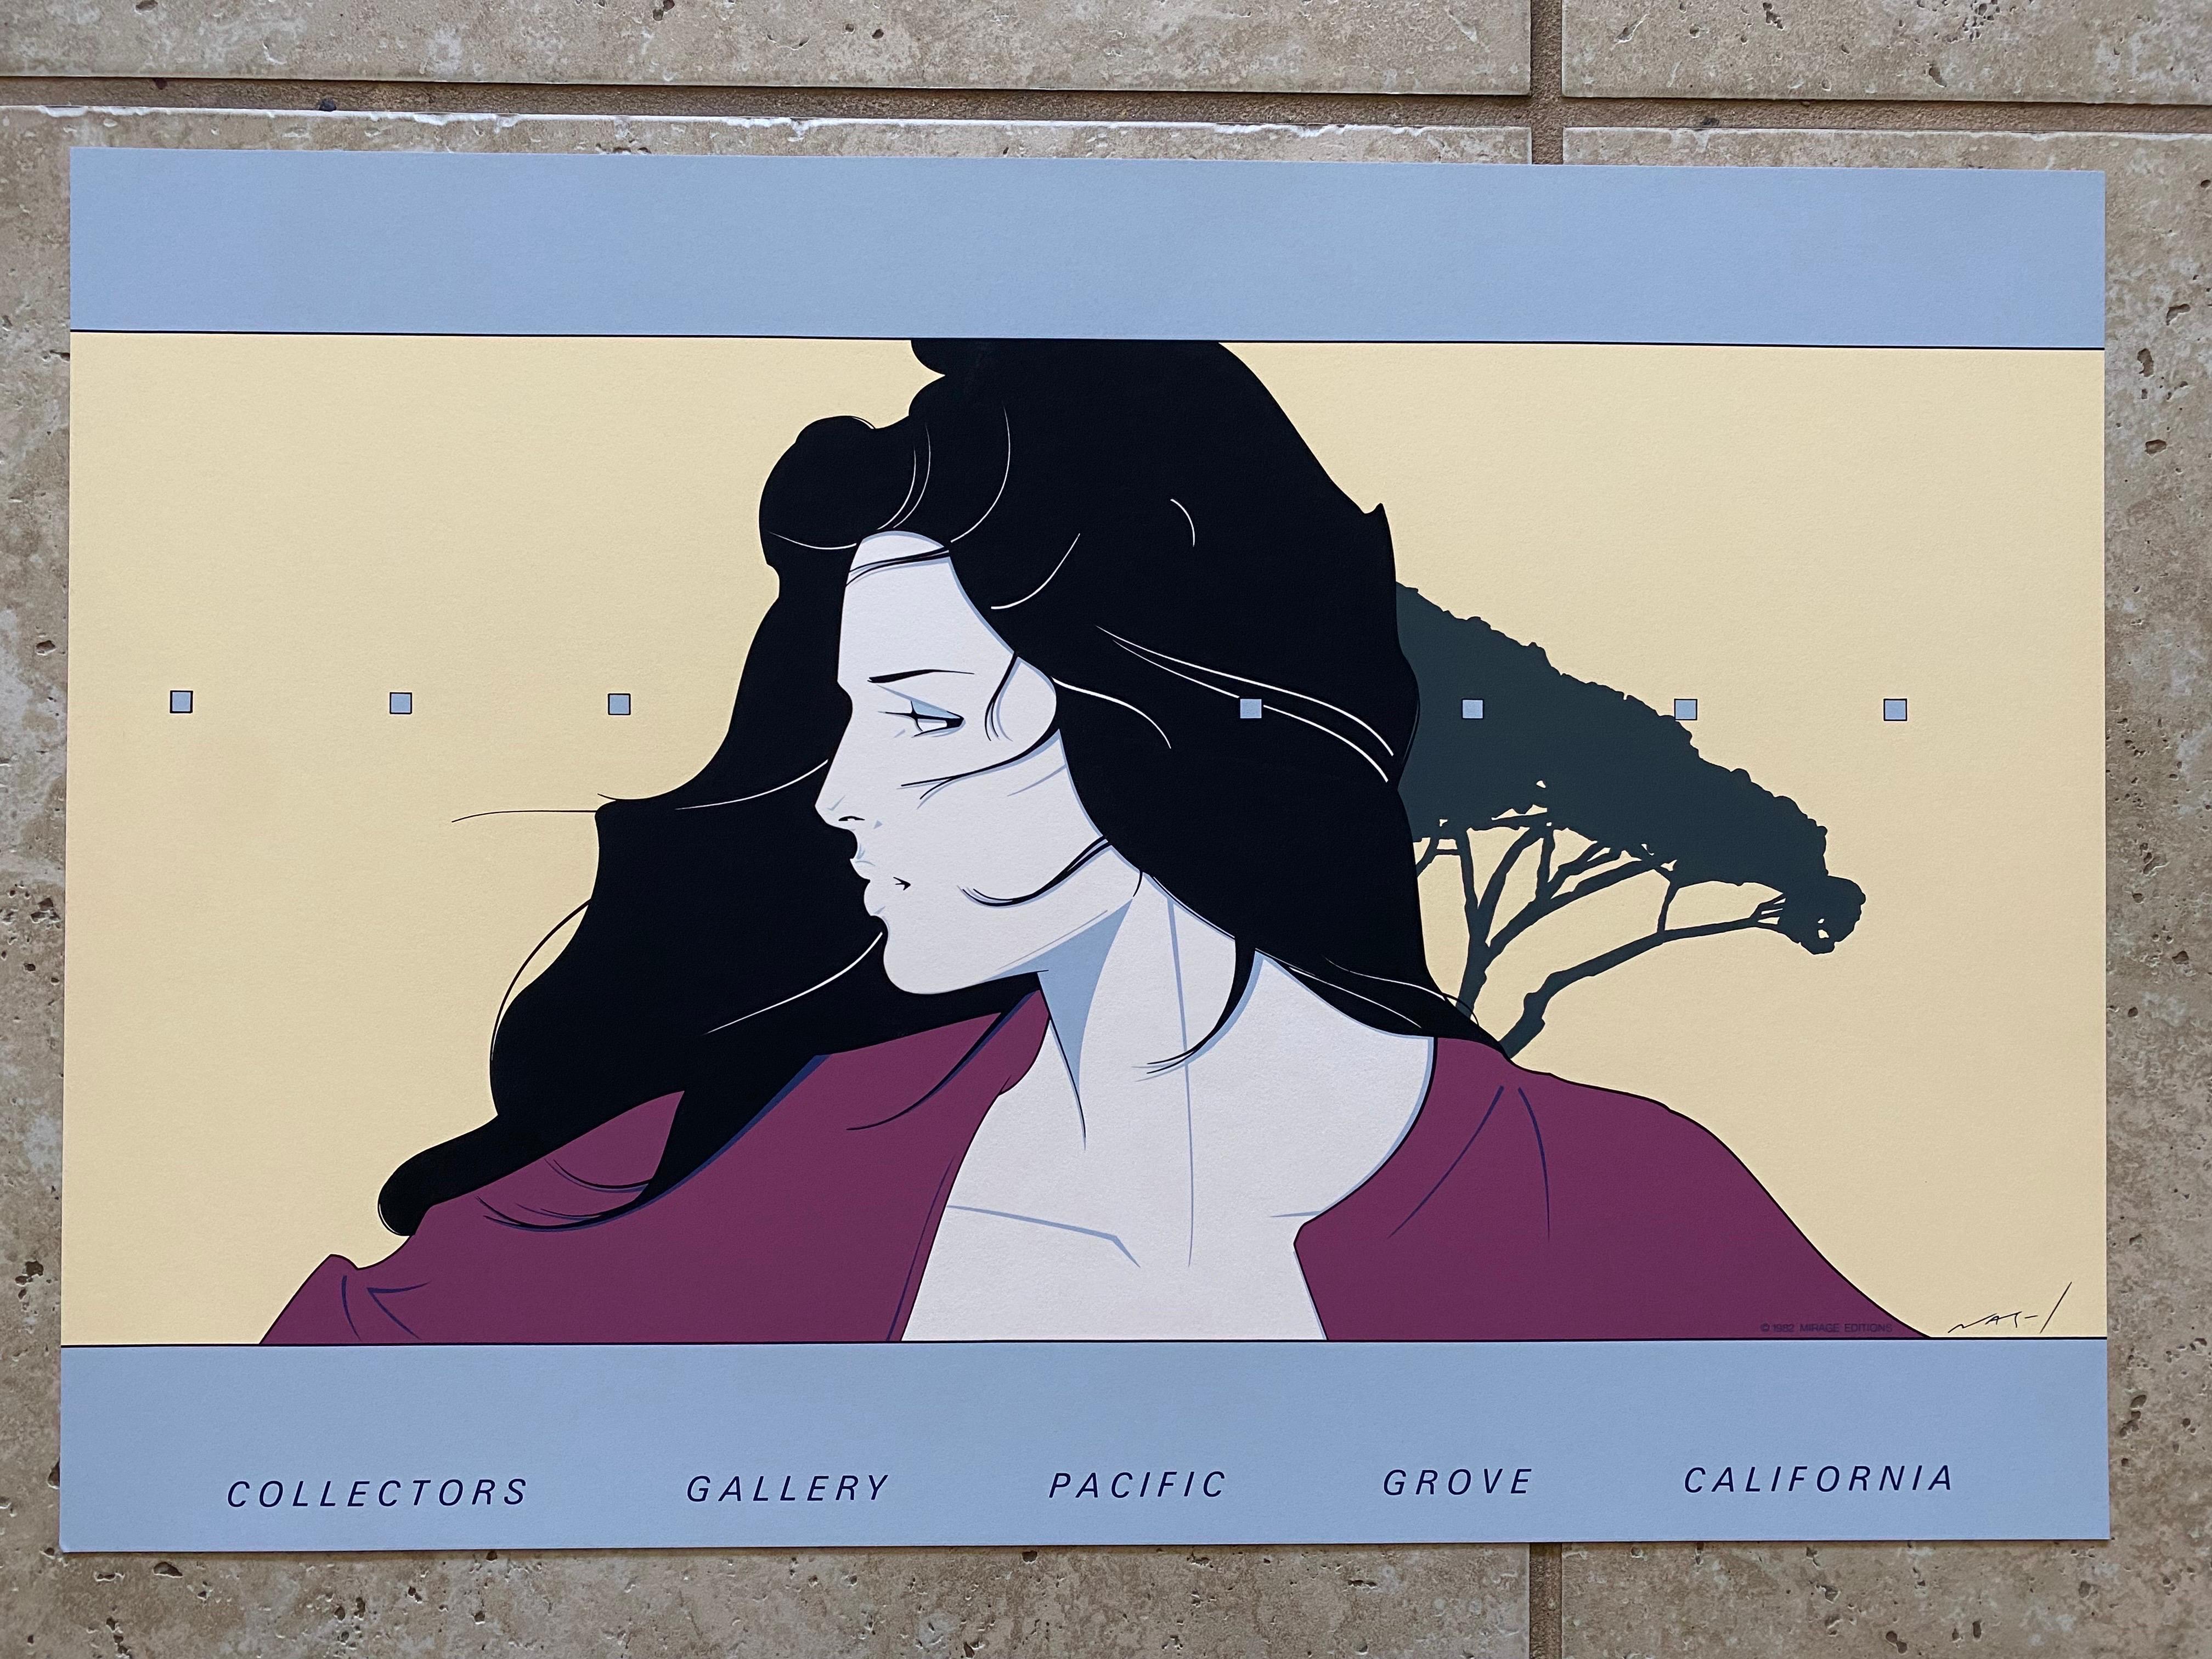 Superbe sérigraphie vintage de Patrick Nagel produite en 1982 par Mirage Editions à Santa Monica, Ca pour Collectors Gallery à Pacific Grove, CA. Cette estampe est signée dans Plate par l'artiste Patrick Nagel.

Cette sérigraphie sur papier épais de